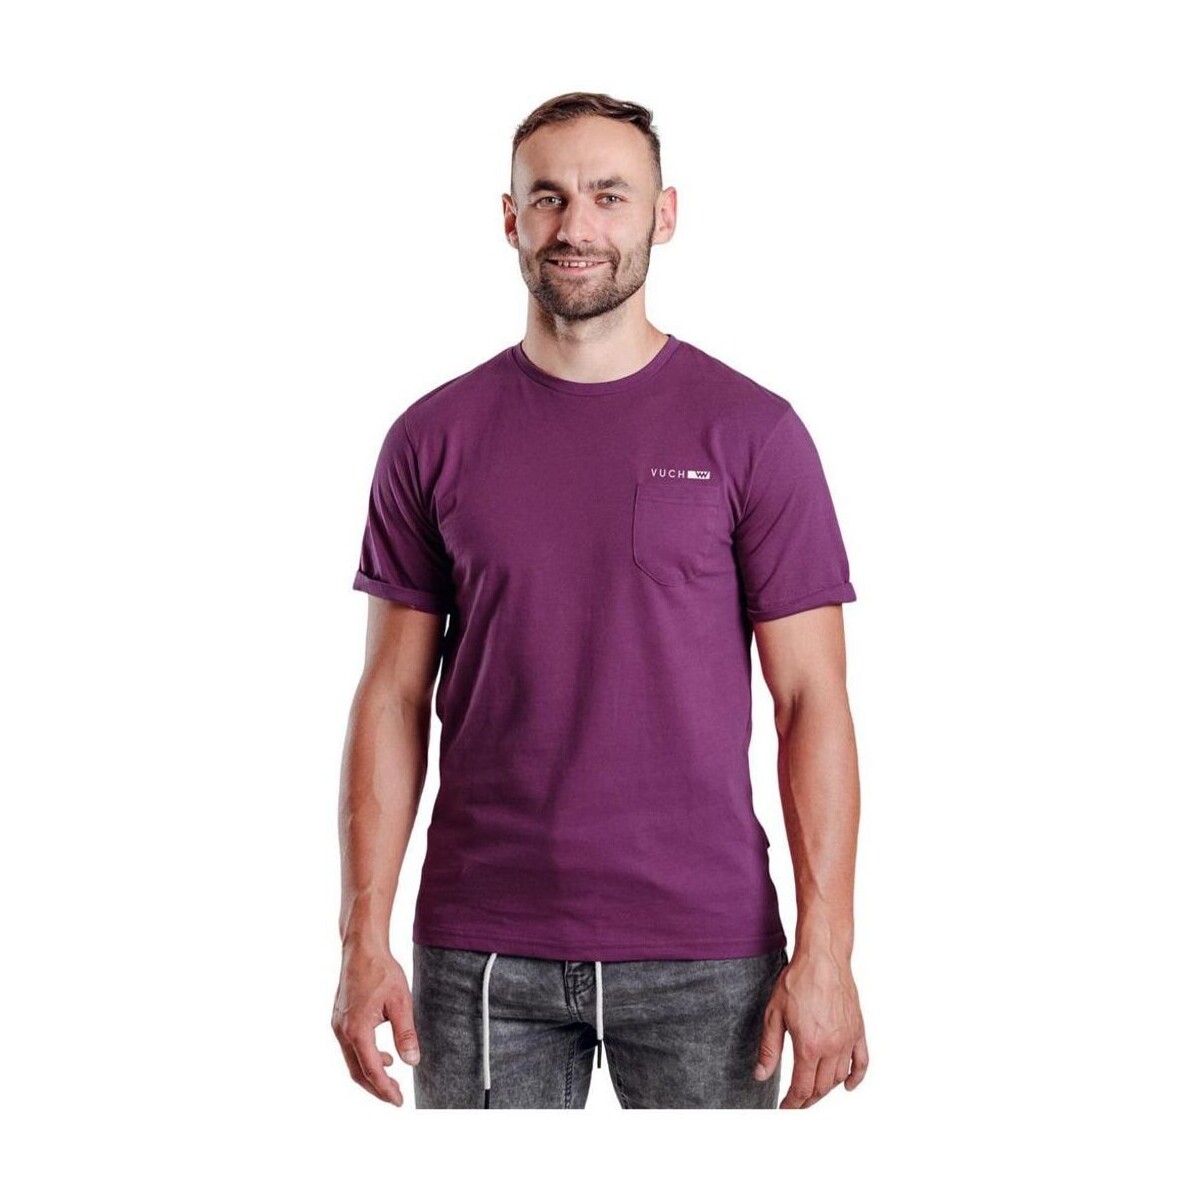 Textil Muži Trička s krátkým rukávem Vuch Pánské triko Rasko fialová Fialová